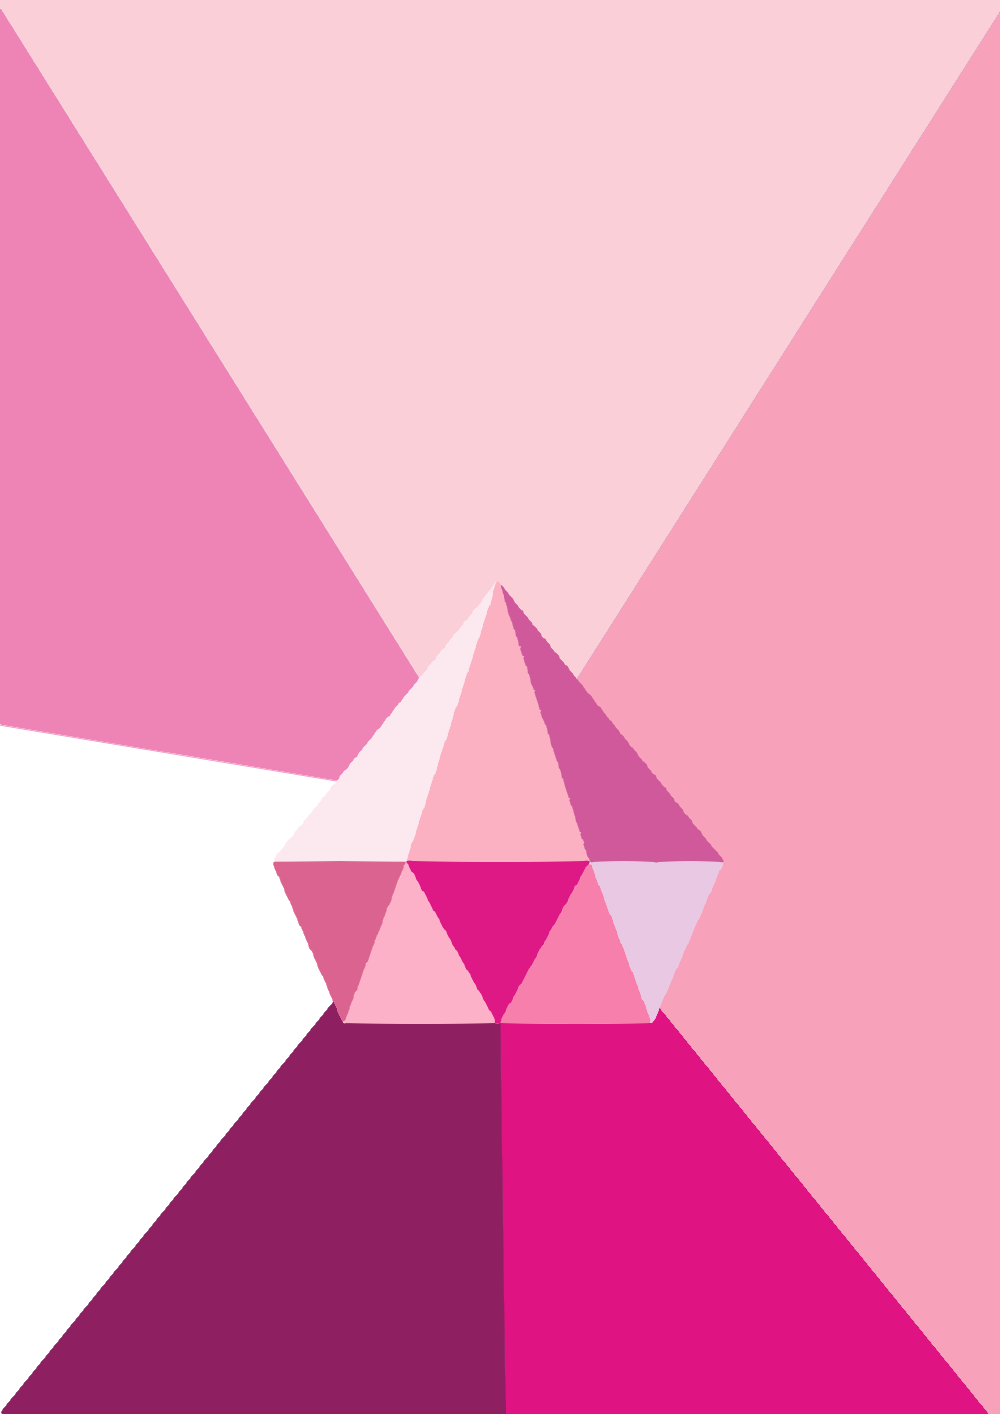 Hình nền đơn giản Pink Diamond Steven Universe: Với hình nền đơn giản Pink Diamond Steven Universe, bạn sẽ có một bức tranh nền đẹp mắt, không quá rườm rà và năng động. Hãy trang trí màn hình của bạn với hình nền này để tạo ra một cảm giác ấm cúng và gần gũi.